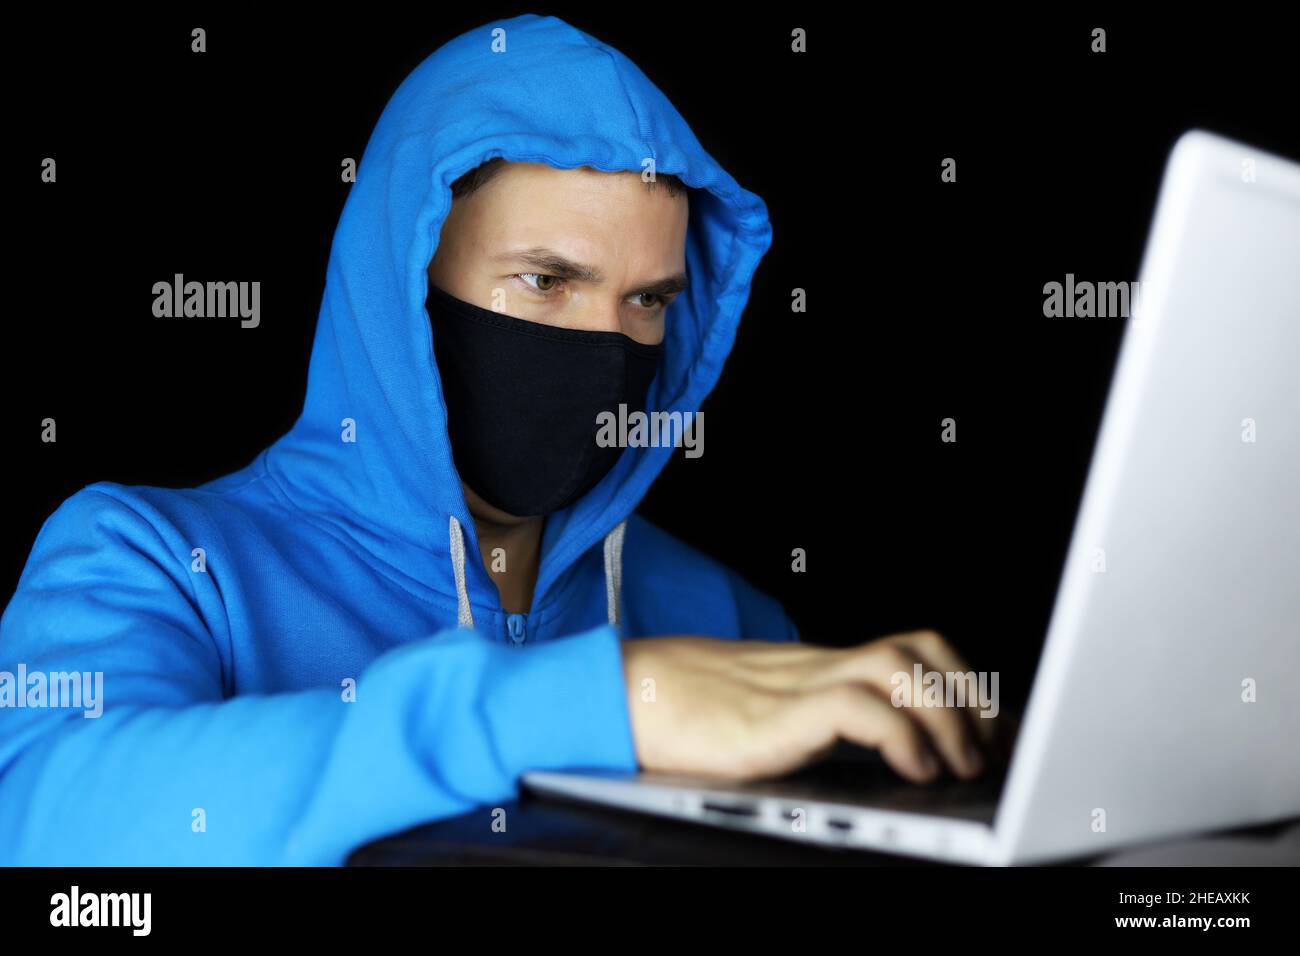 Hombre con máscara y sudadera con capucha azul sentado con un ordenador portátil sobre fondo negro. Concepto de delito cibernético, piratería informática y tecnología Foto de stock